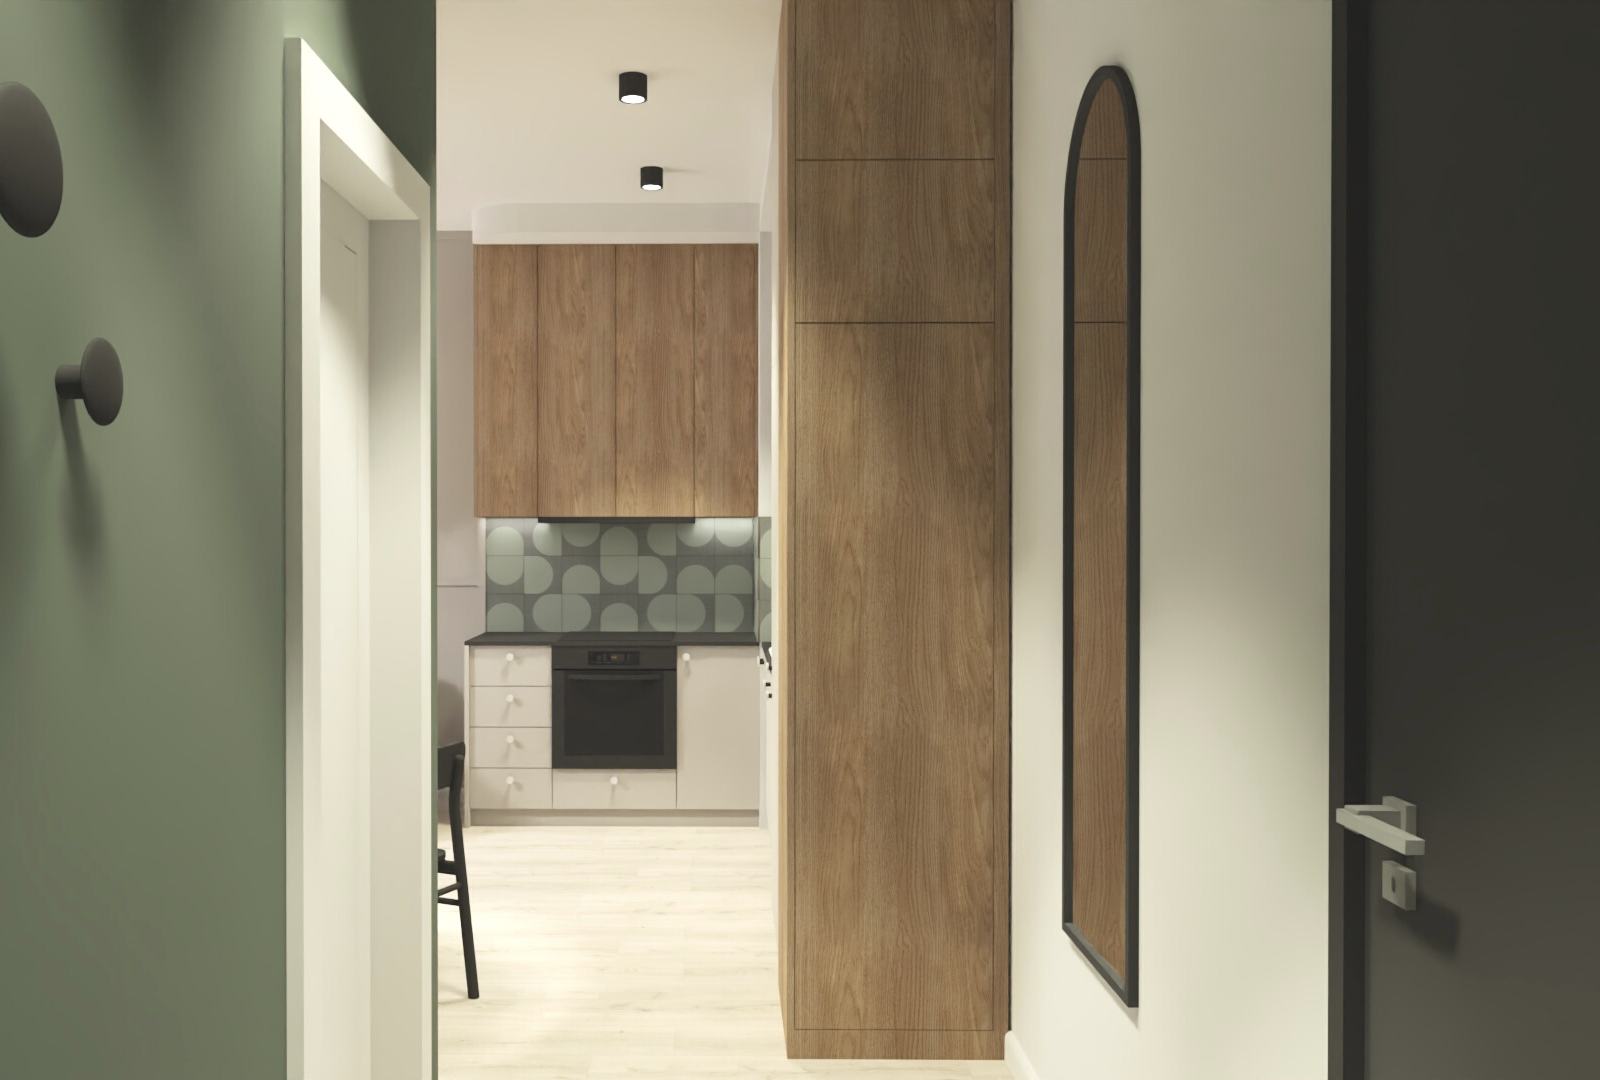 Wizualizacja - ujęcie z korytarza w kierunku kuchni, zielona ściana